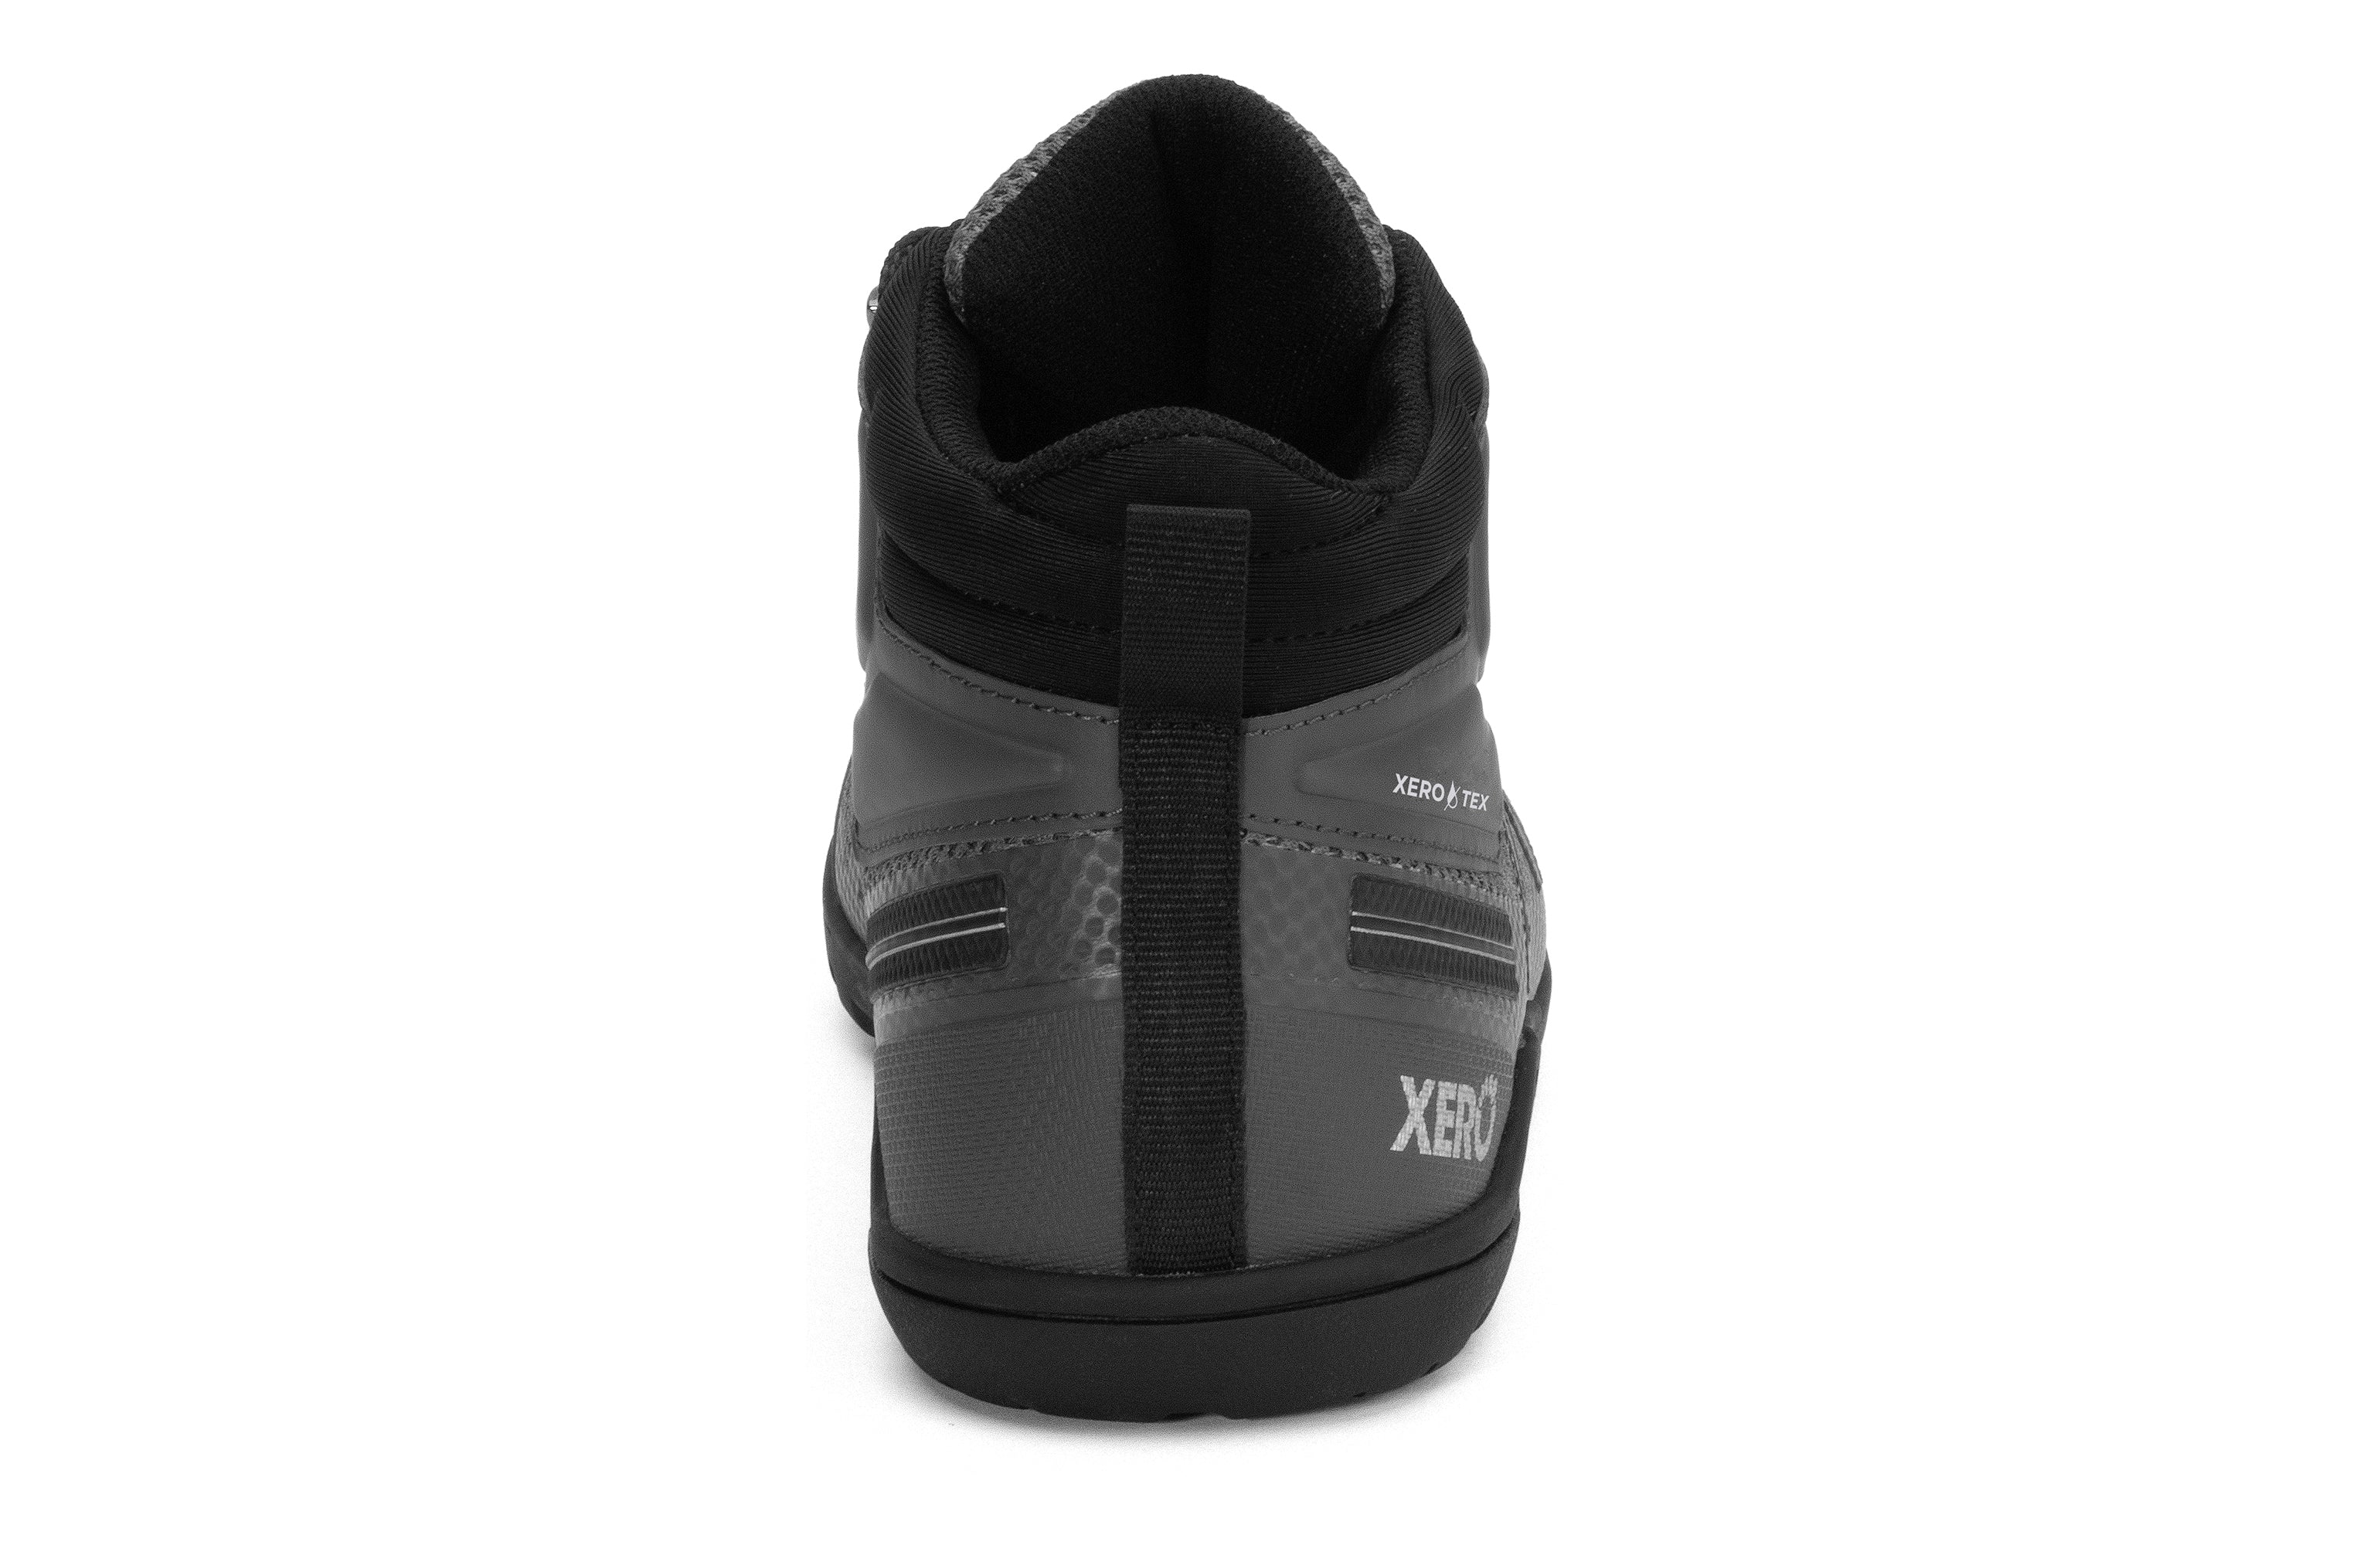 Xero Shoes Xcursion Fusion barfods støvler til mænd i farven asphalt, bagfra